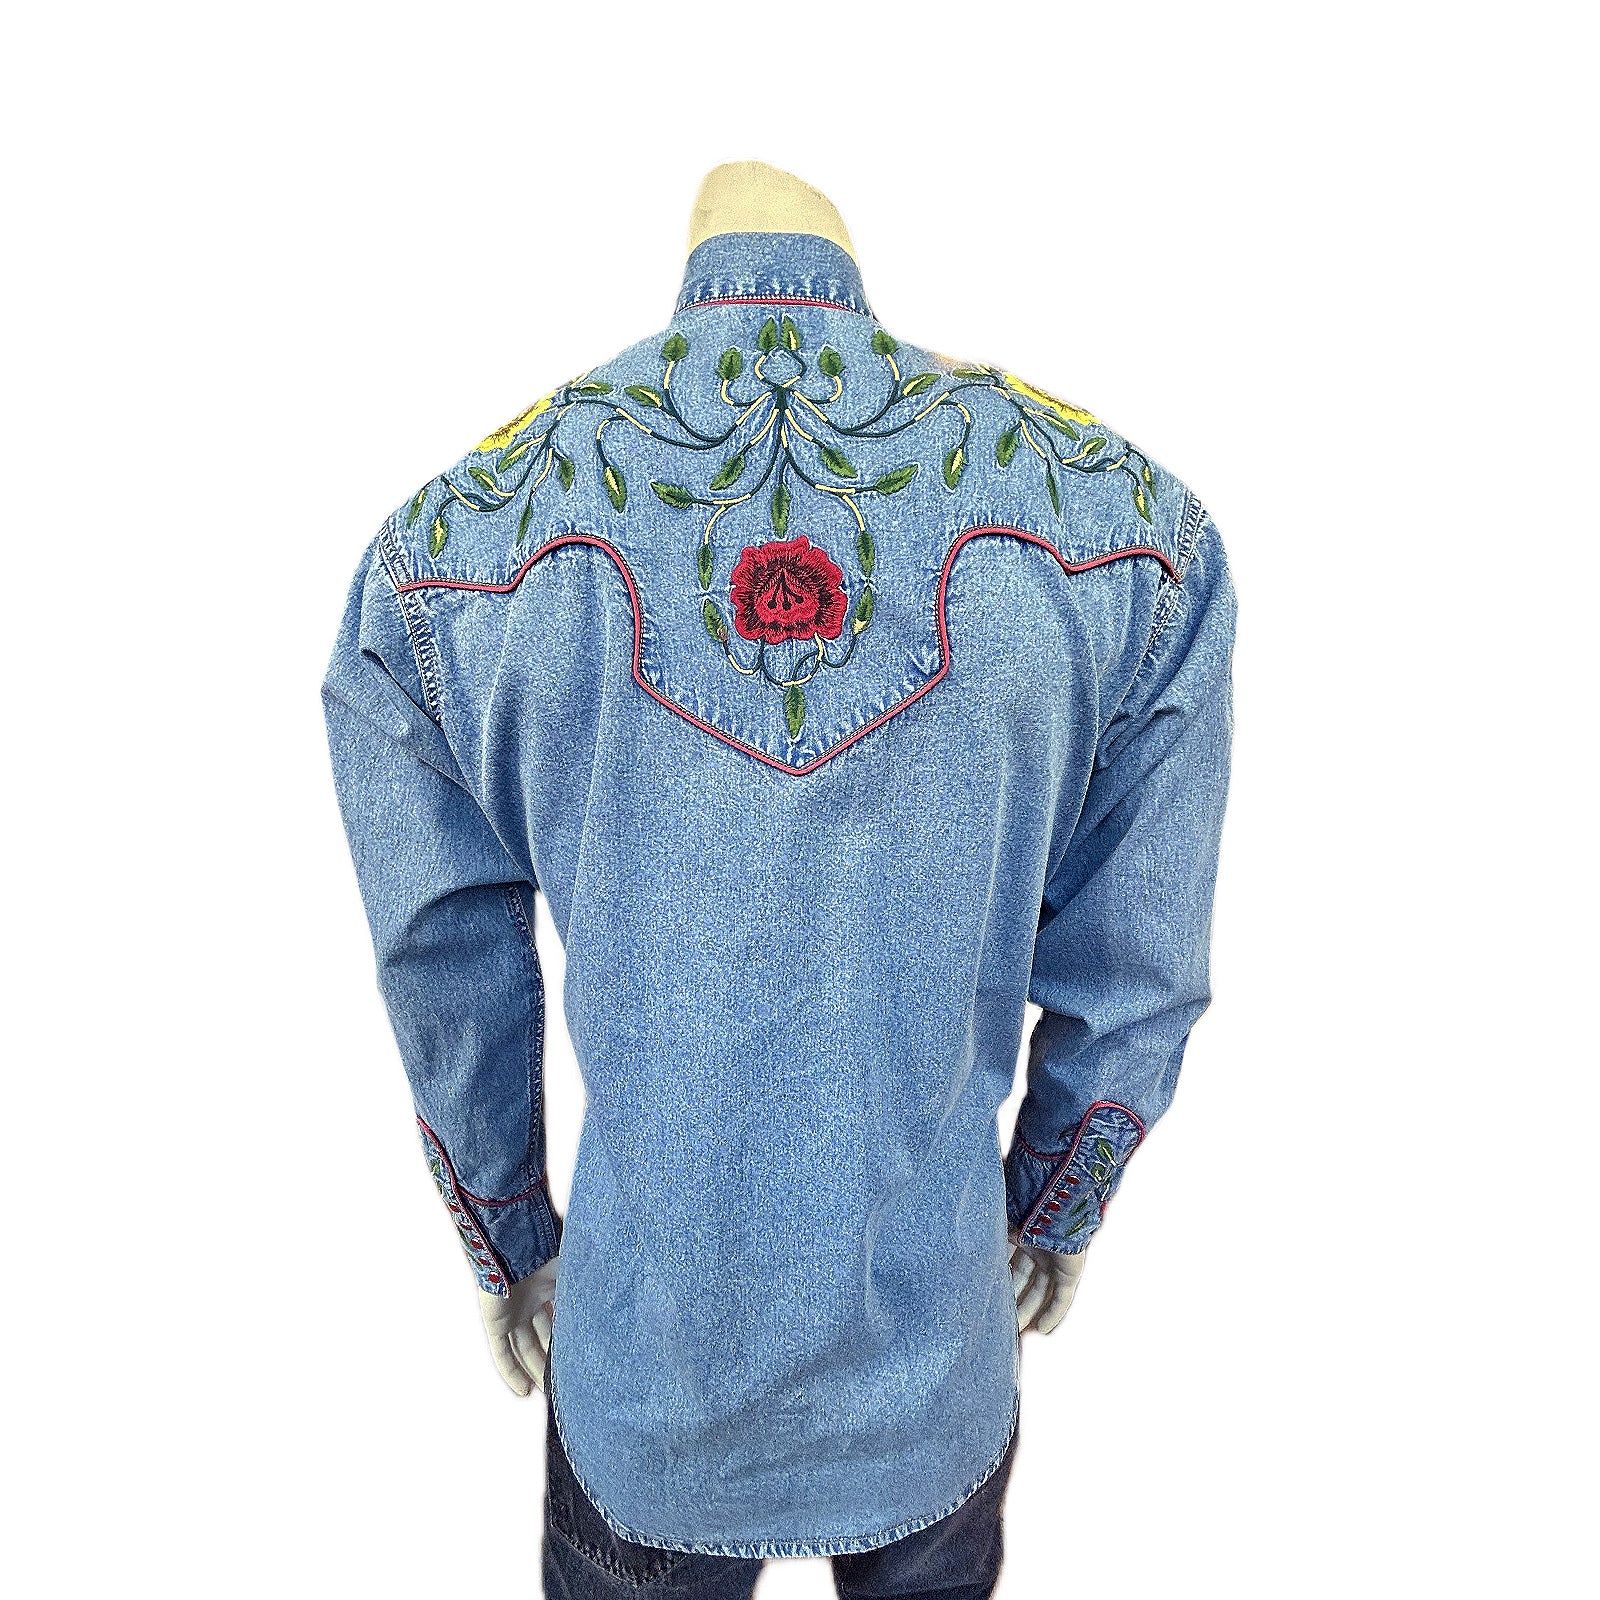 Floral Embroidery Vintage Denim Shirt